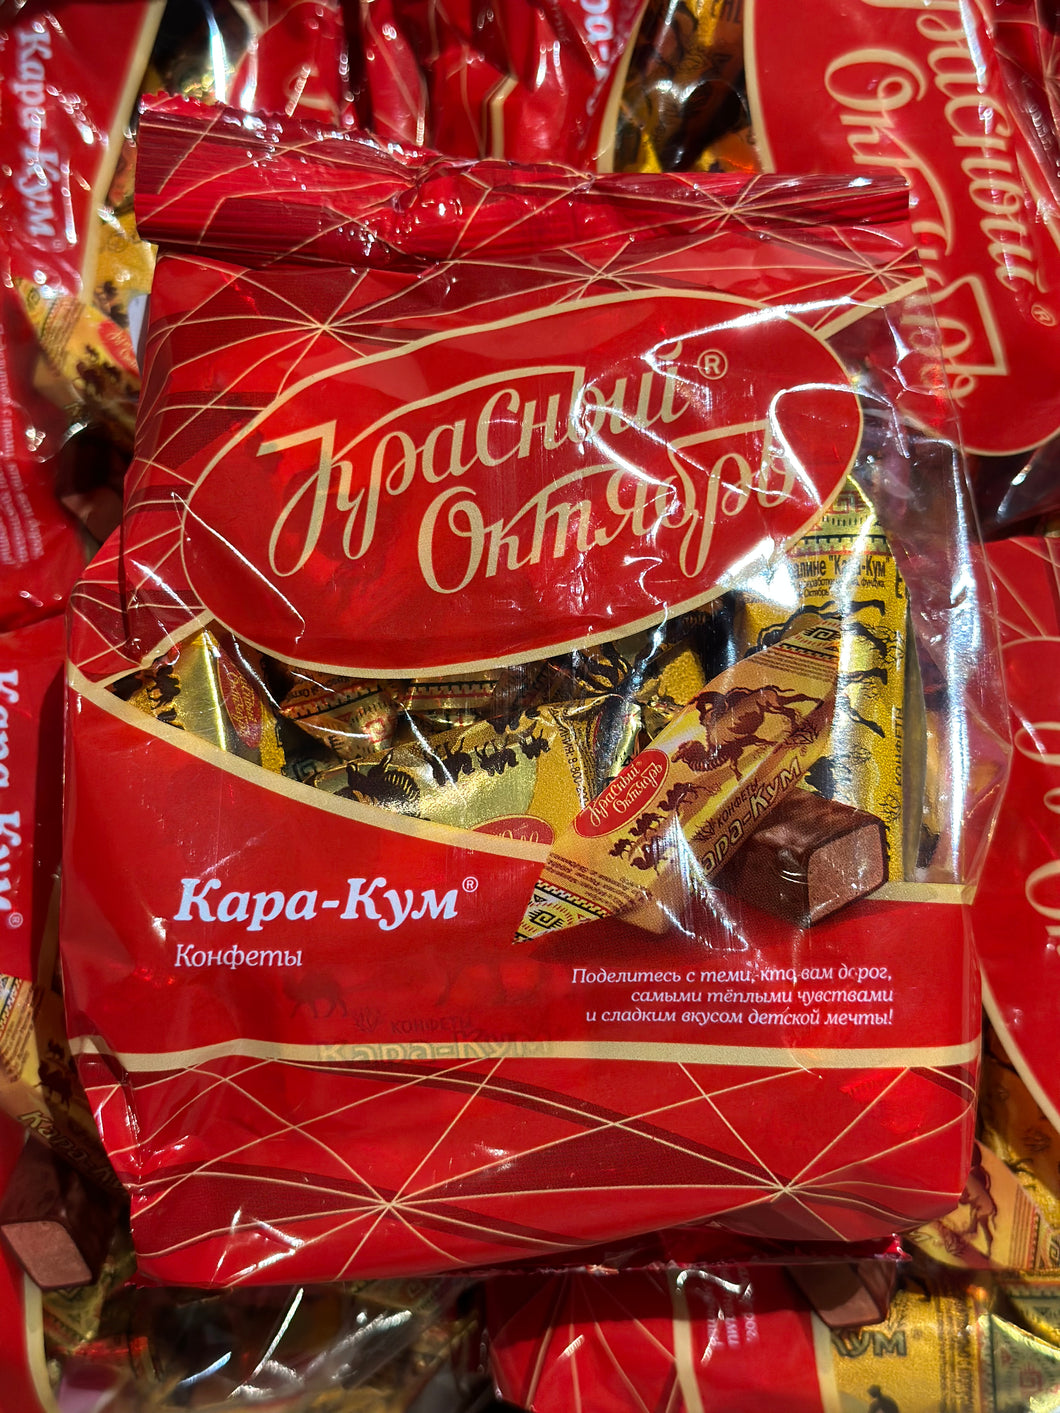 Red October Kara kum chocolate 250g